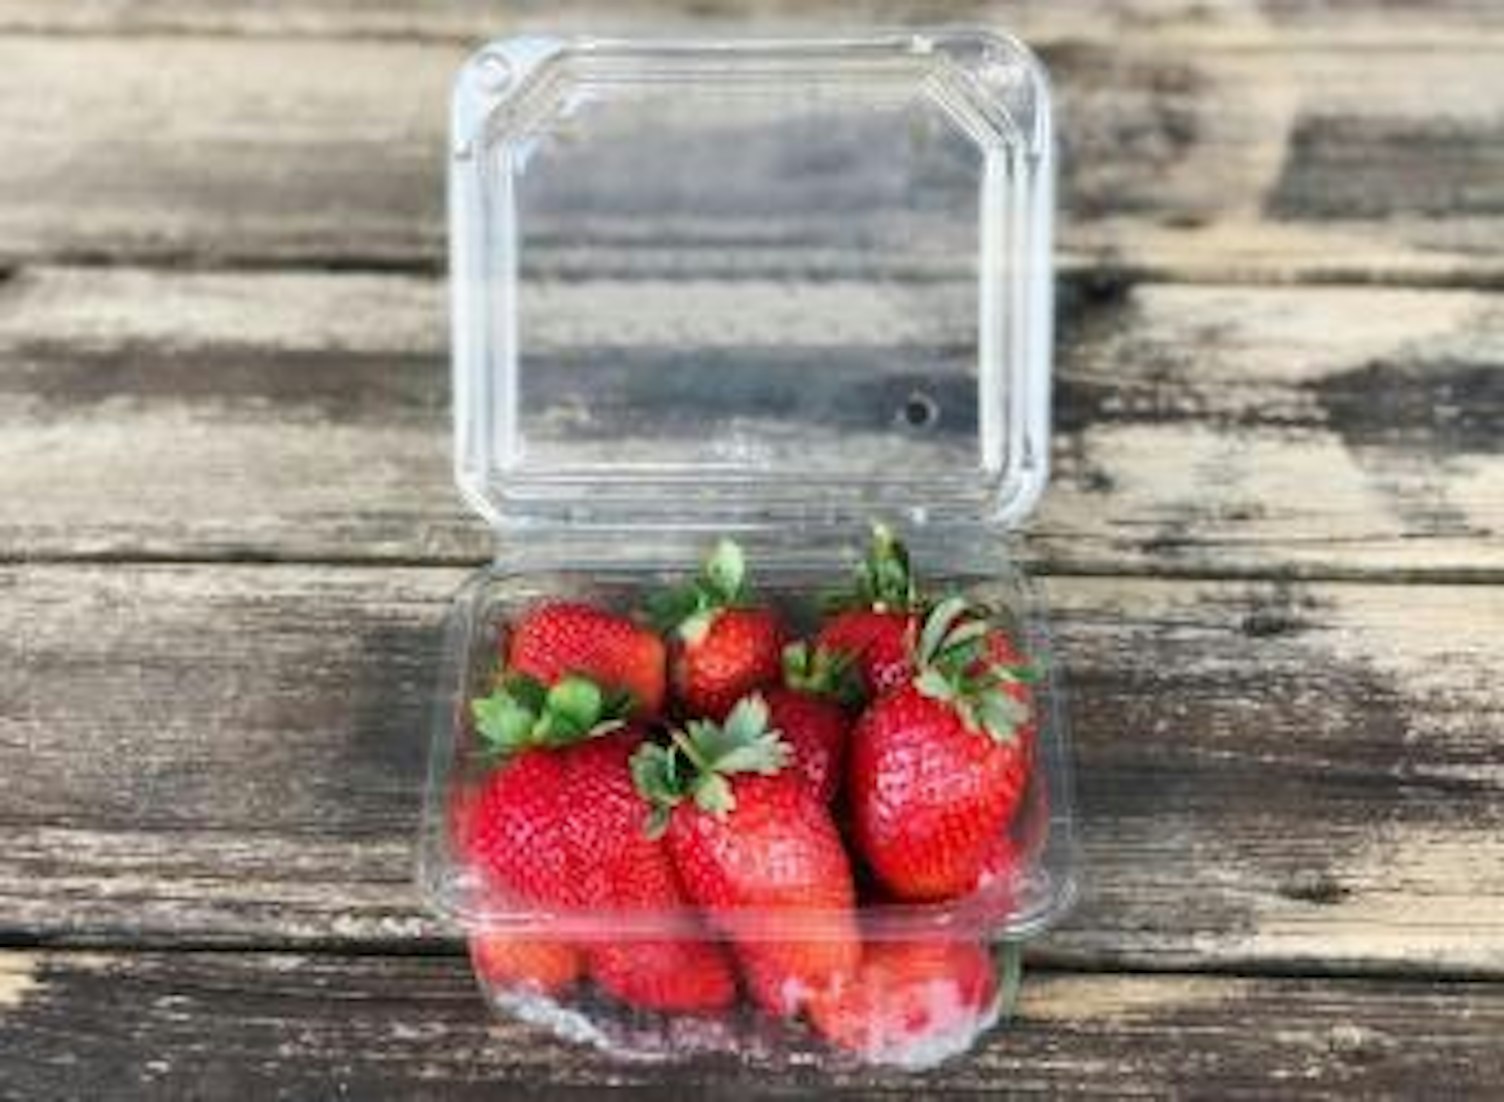 orig strawberries in plastic containerunsplash